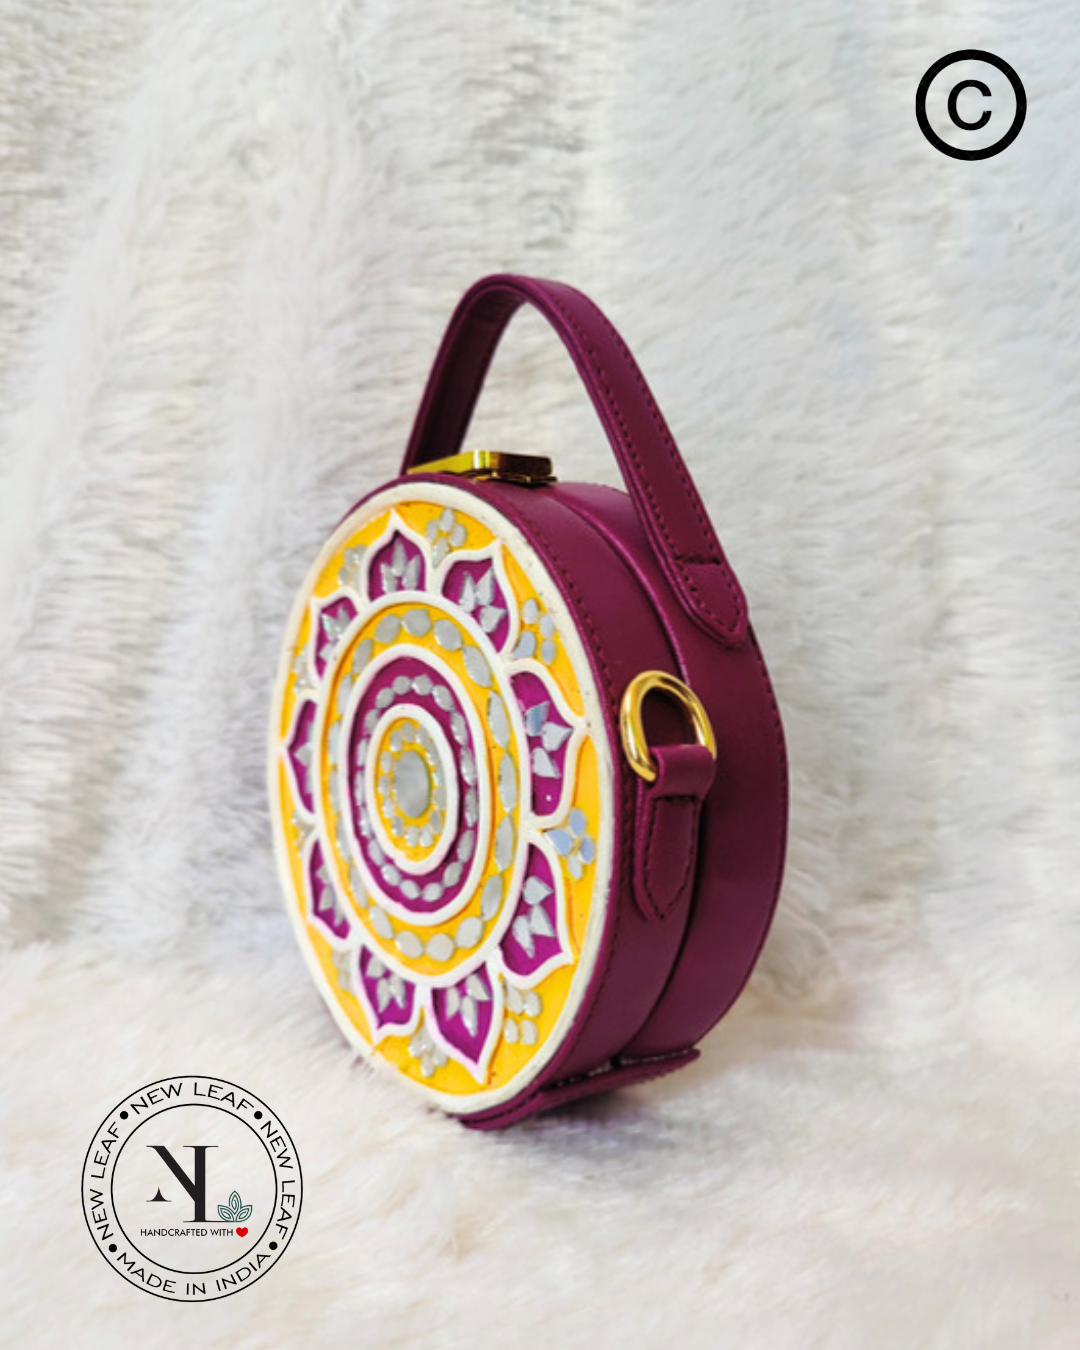 Mini Mandala Lippan Art Handcrafted Circle Box Bag